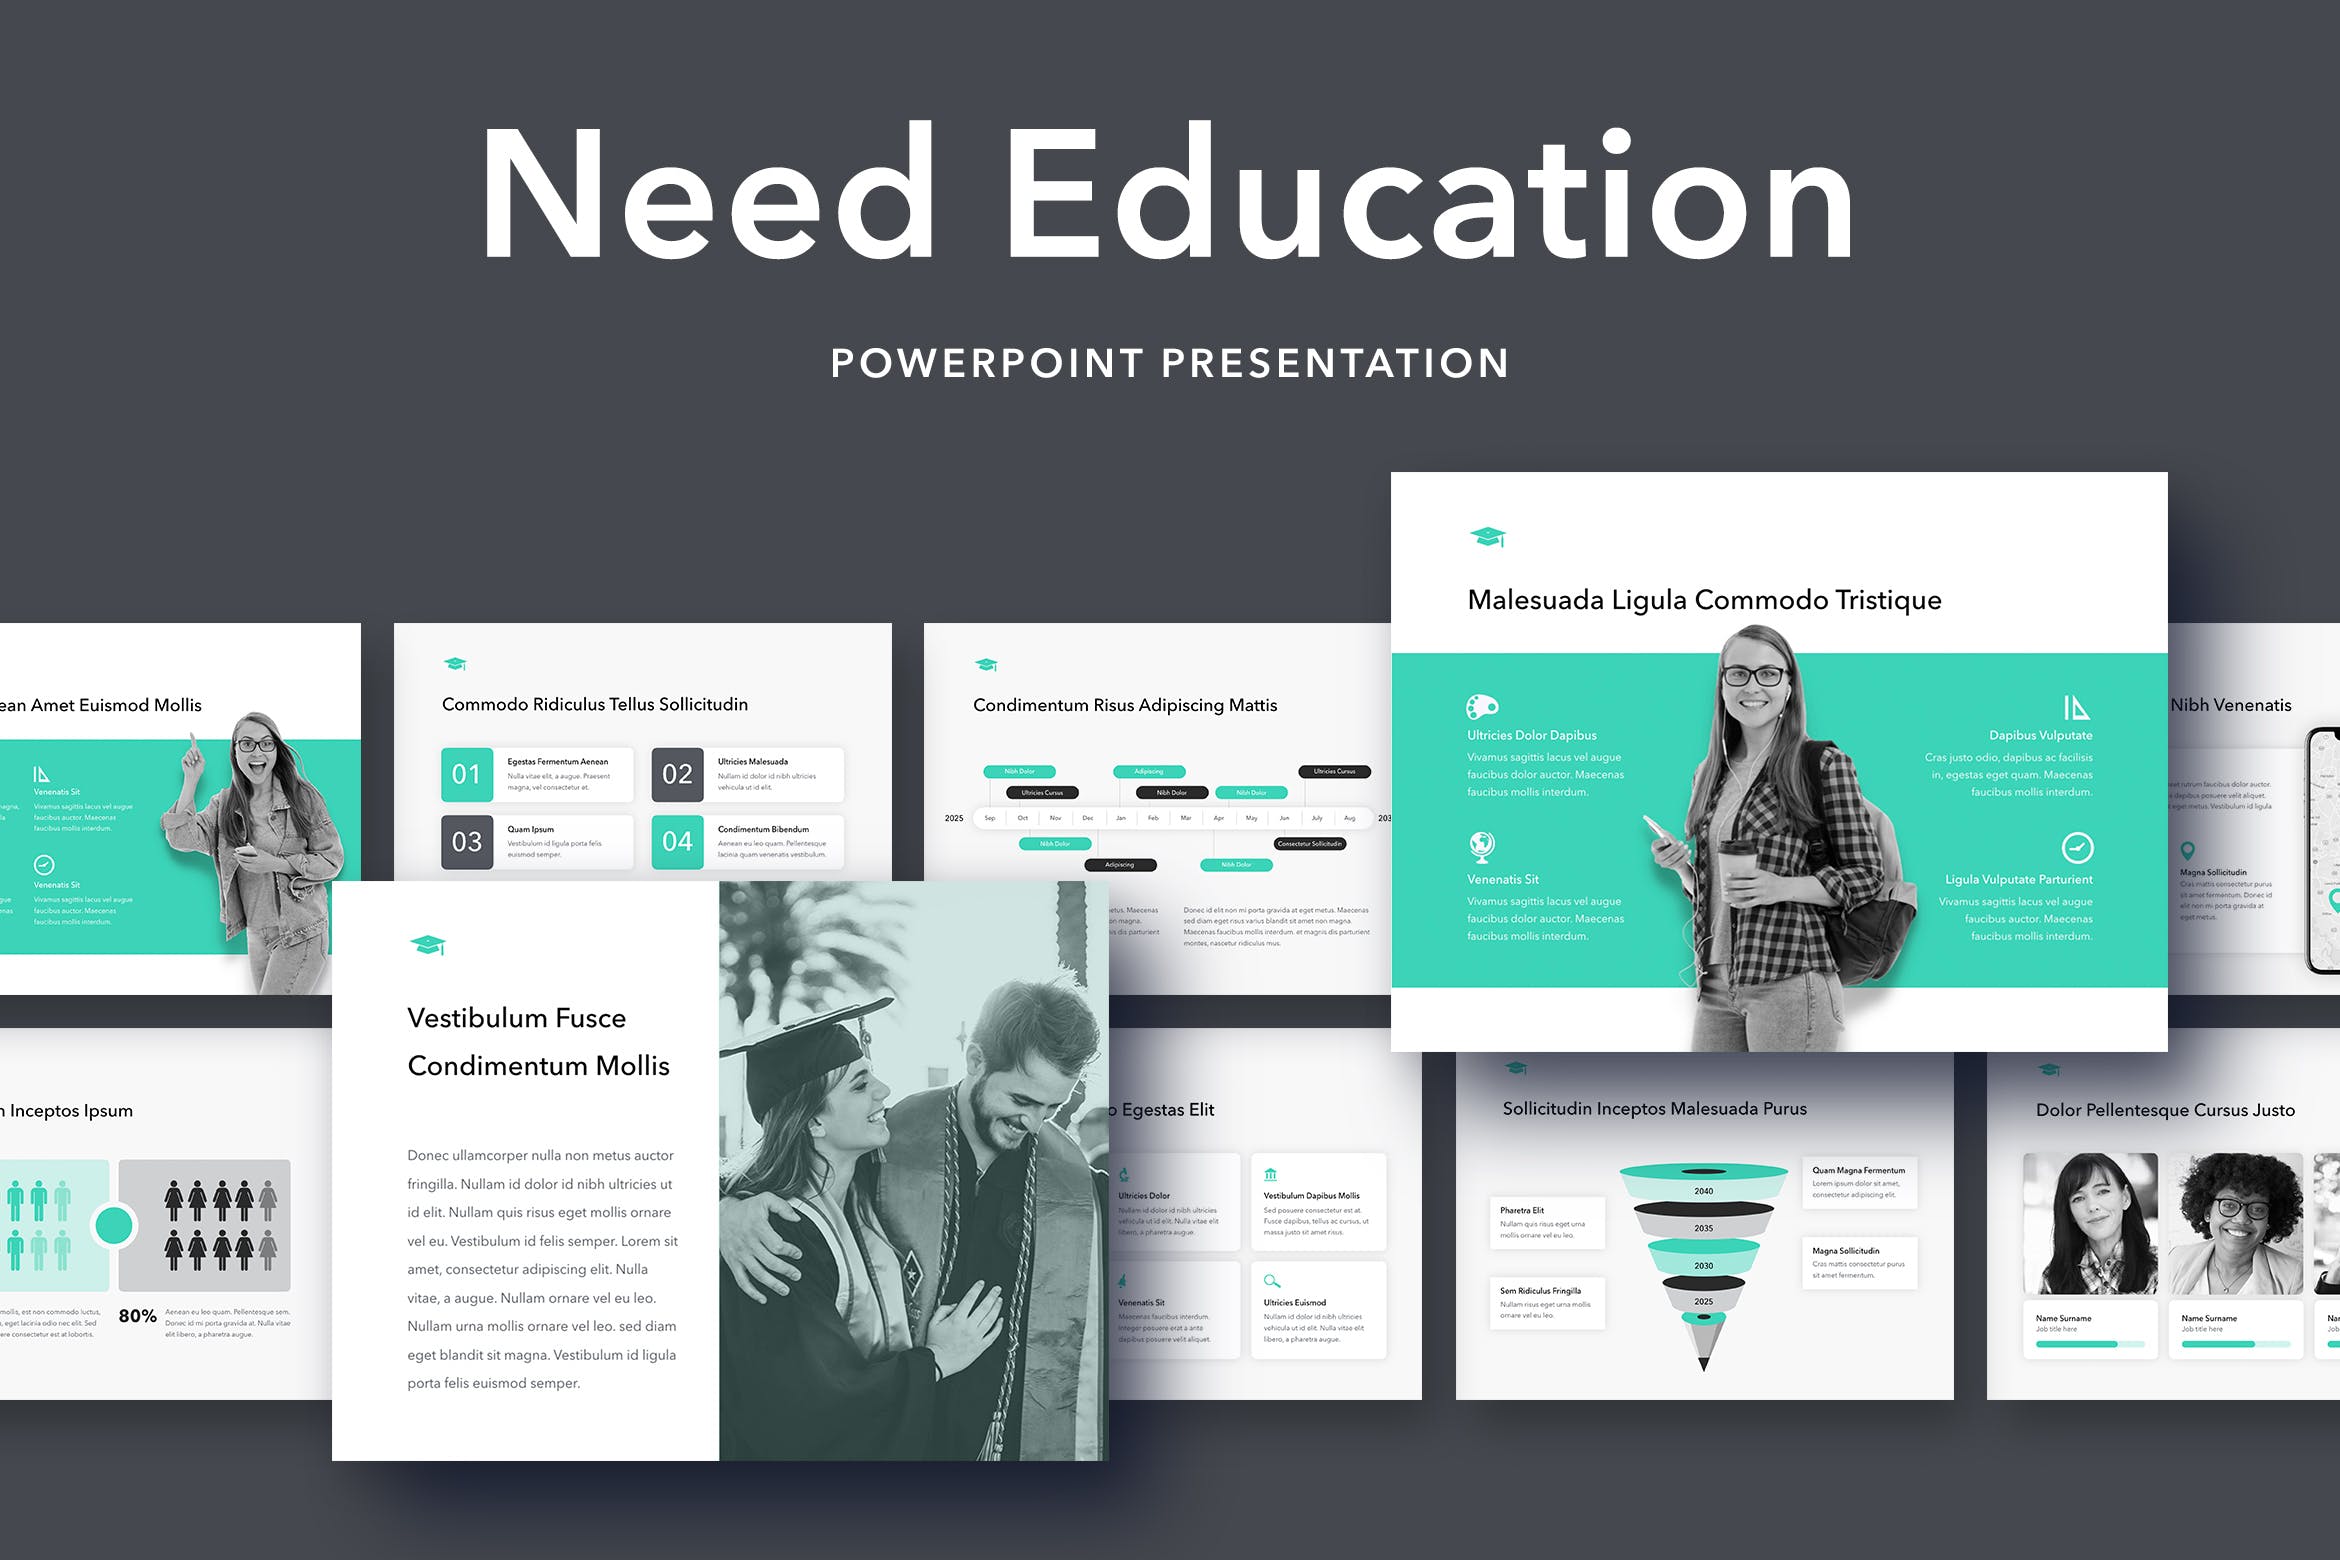 教育行业适用的高级PPT模板下载 Need Education PowerPoint Template插图